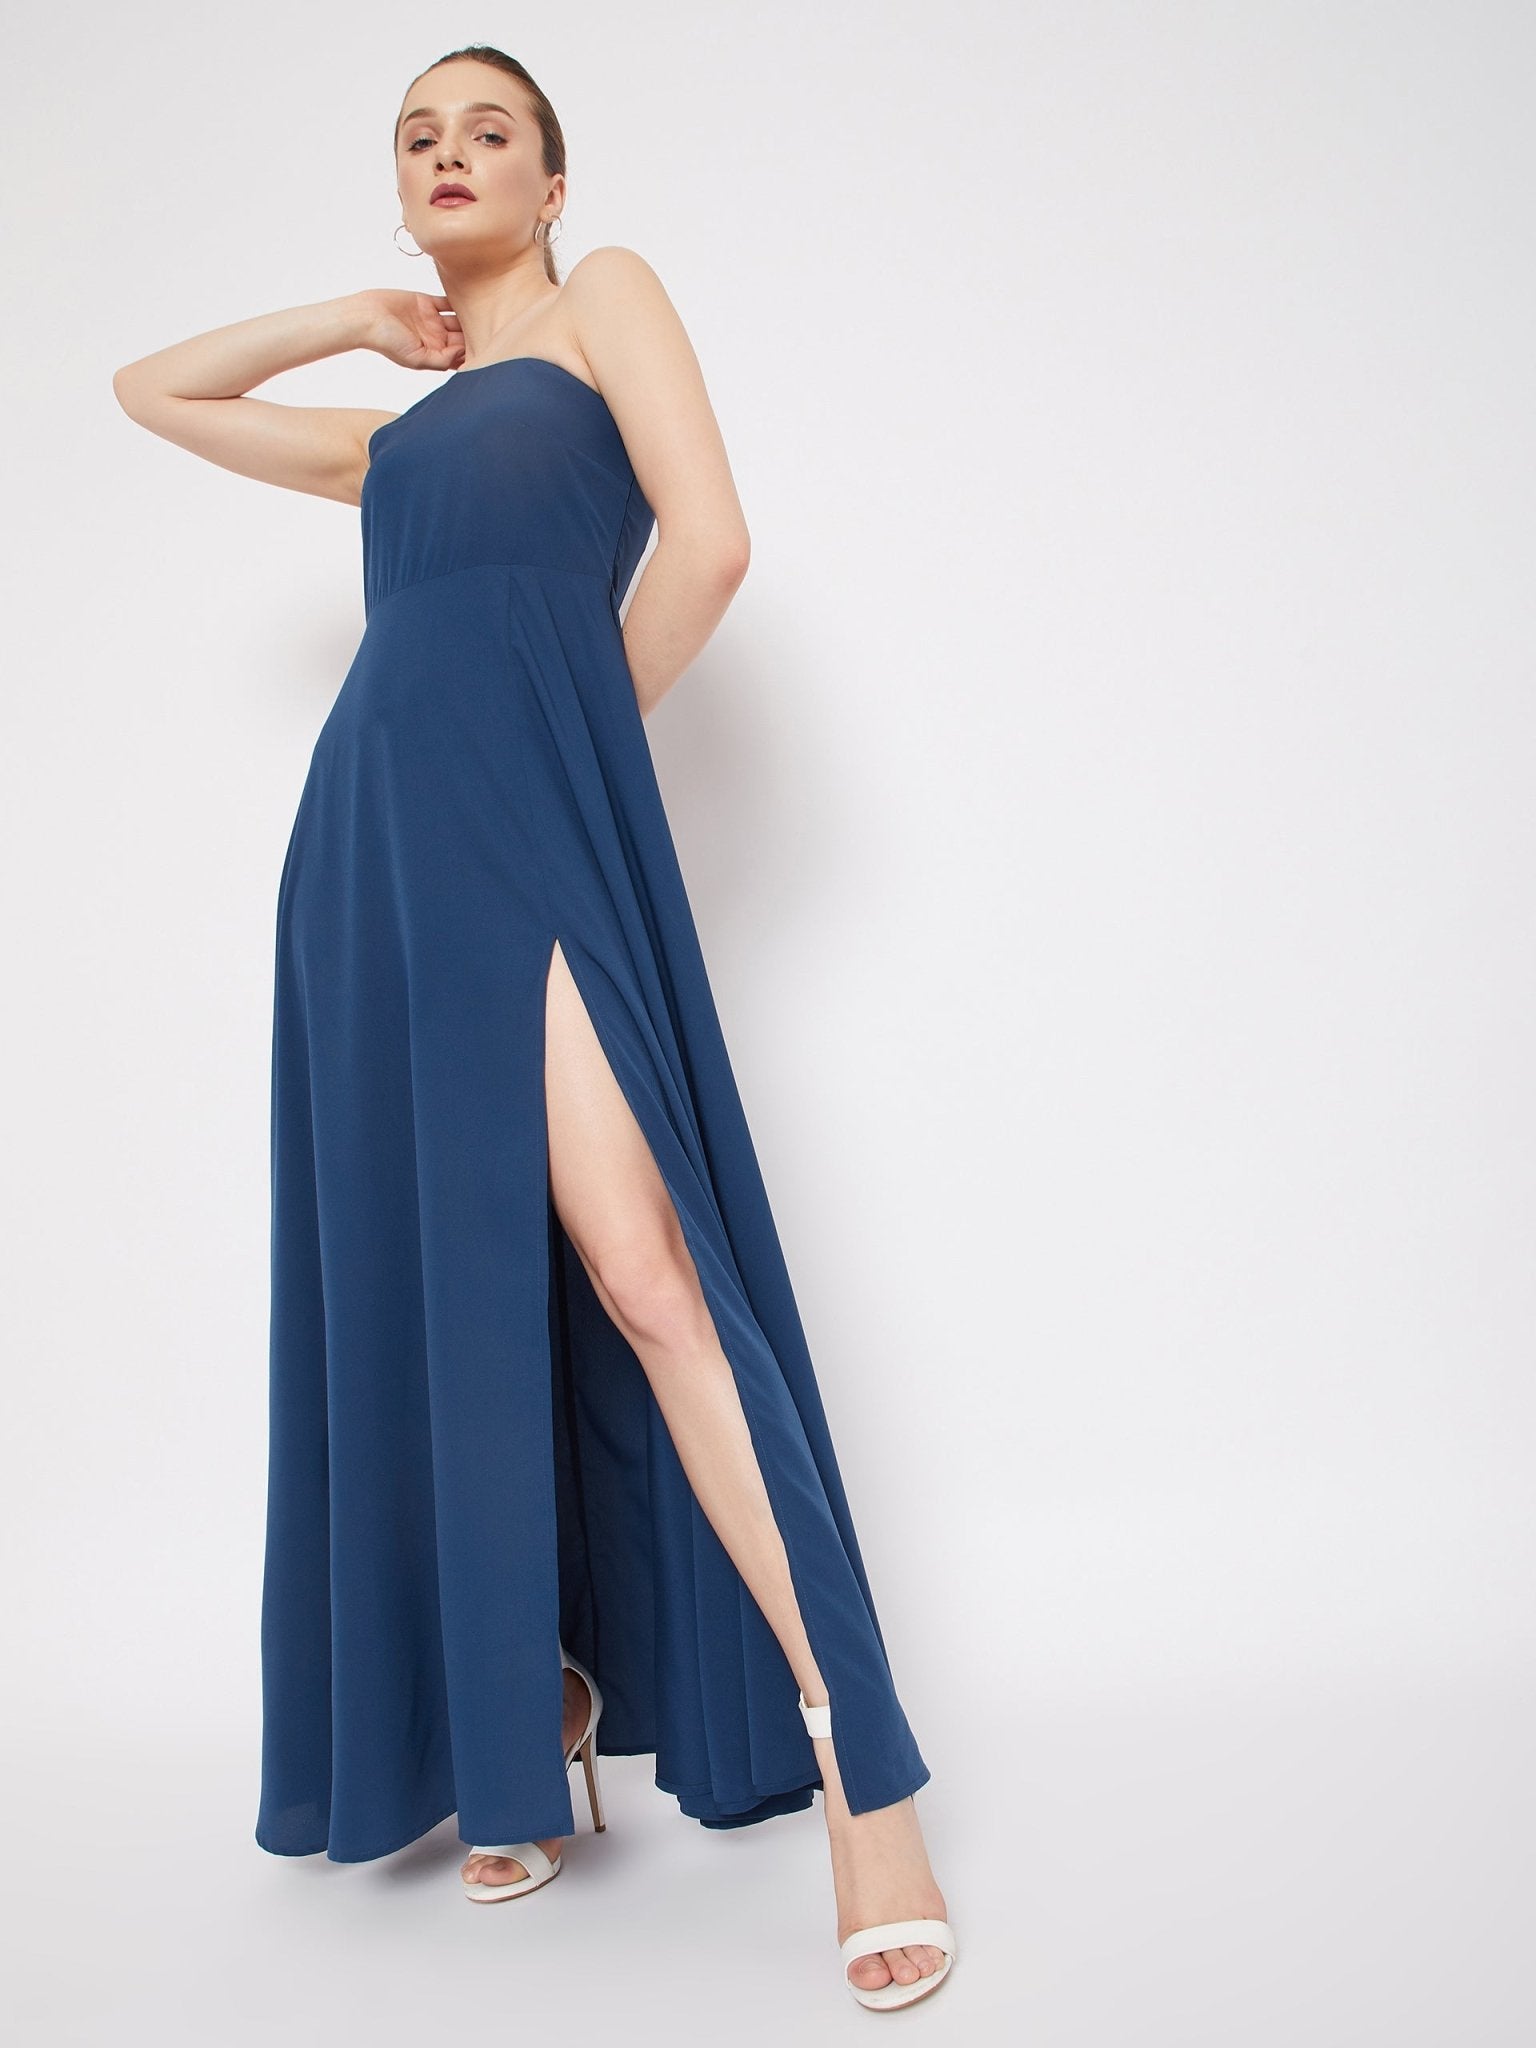 Folk Republic Women Solid Blue One-Shoulder Neck Thigh-High Slit Flared Maxi Dress - #folk republic#